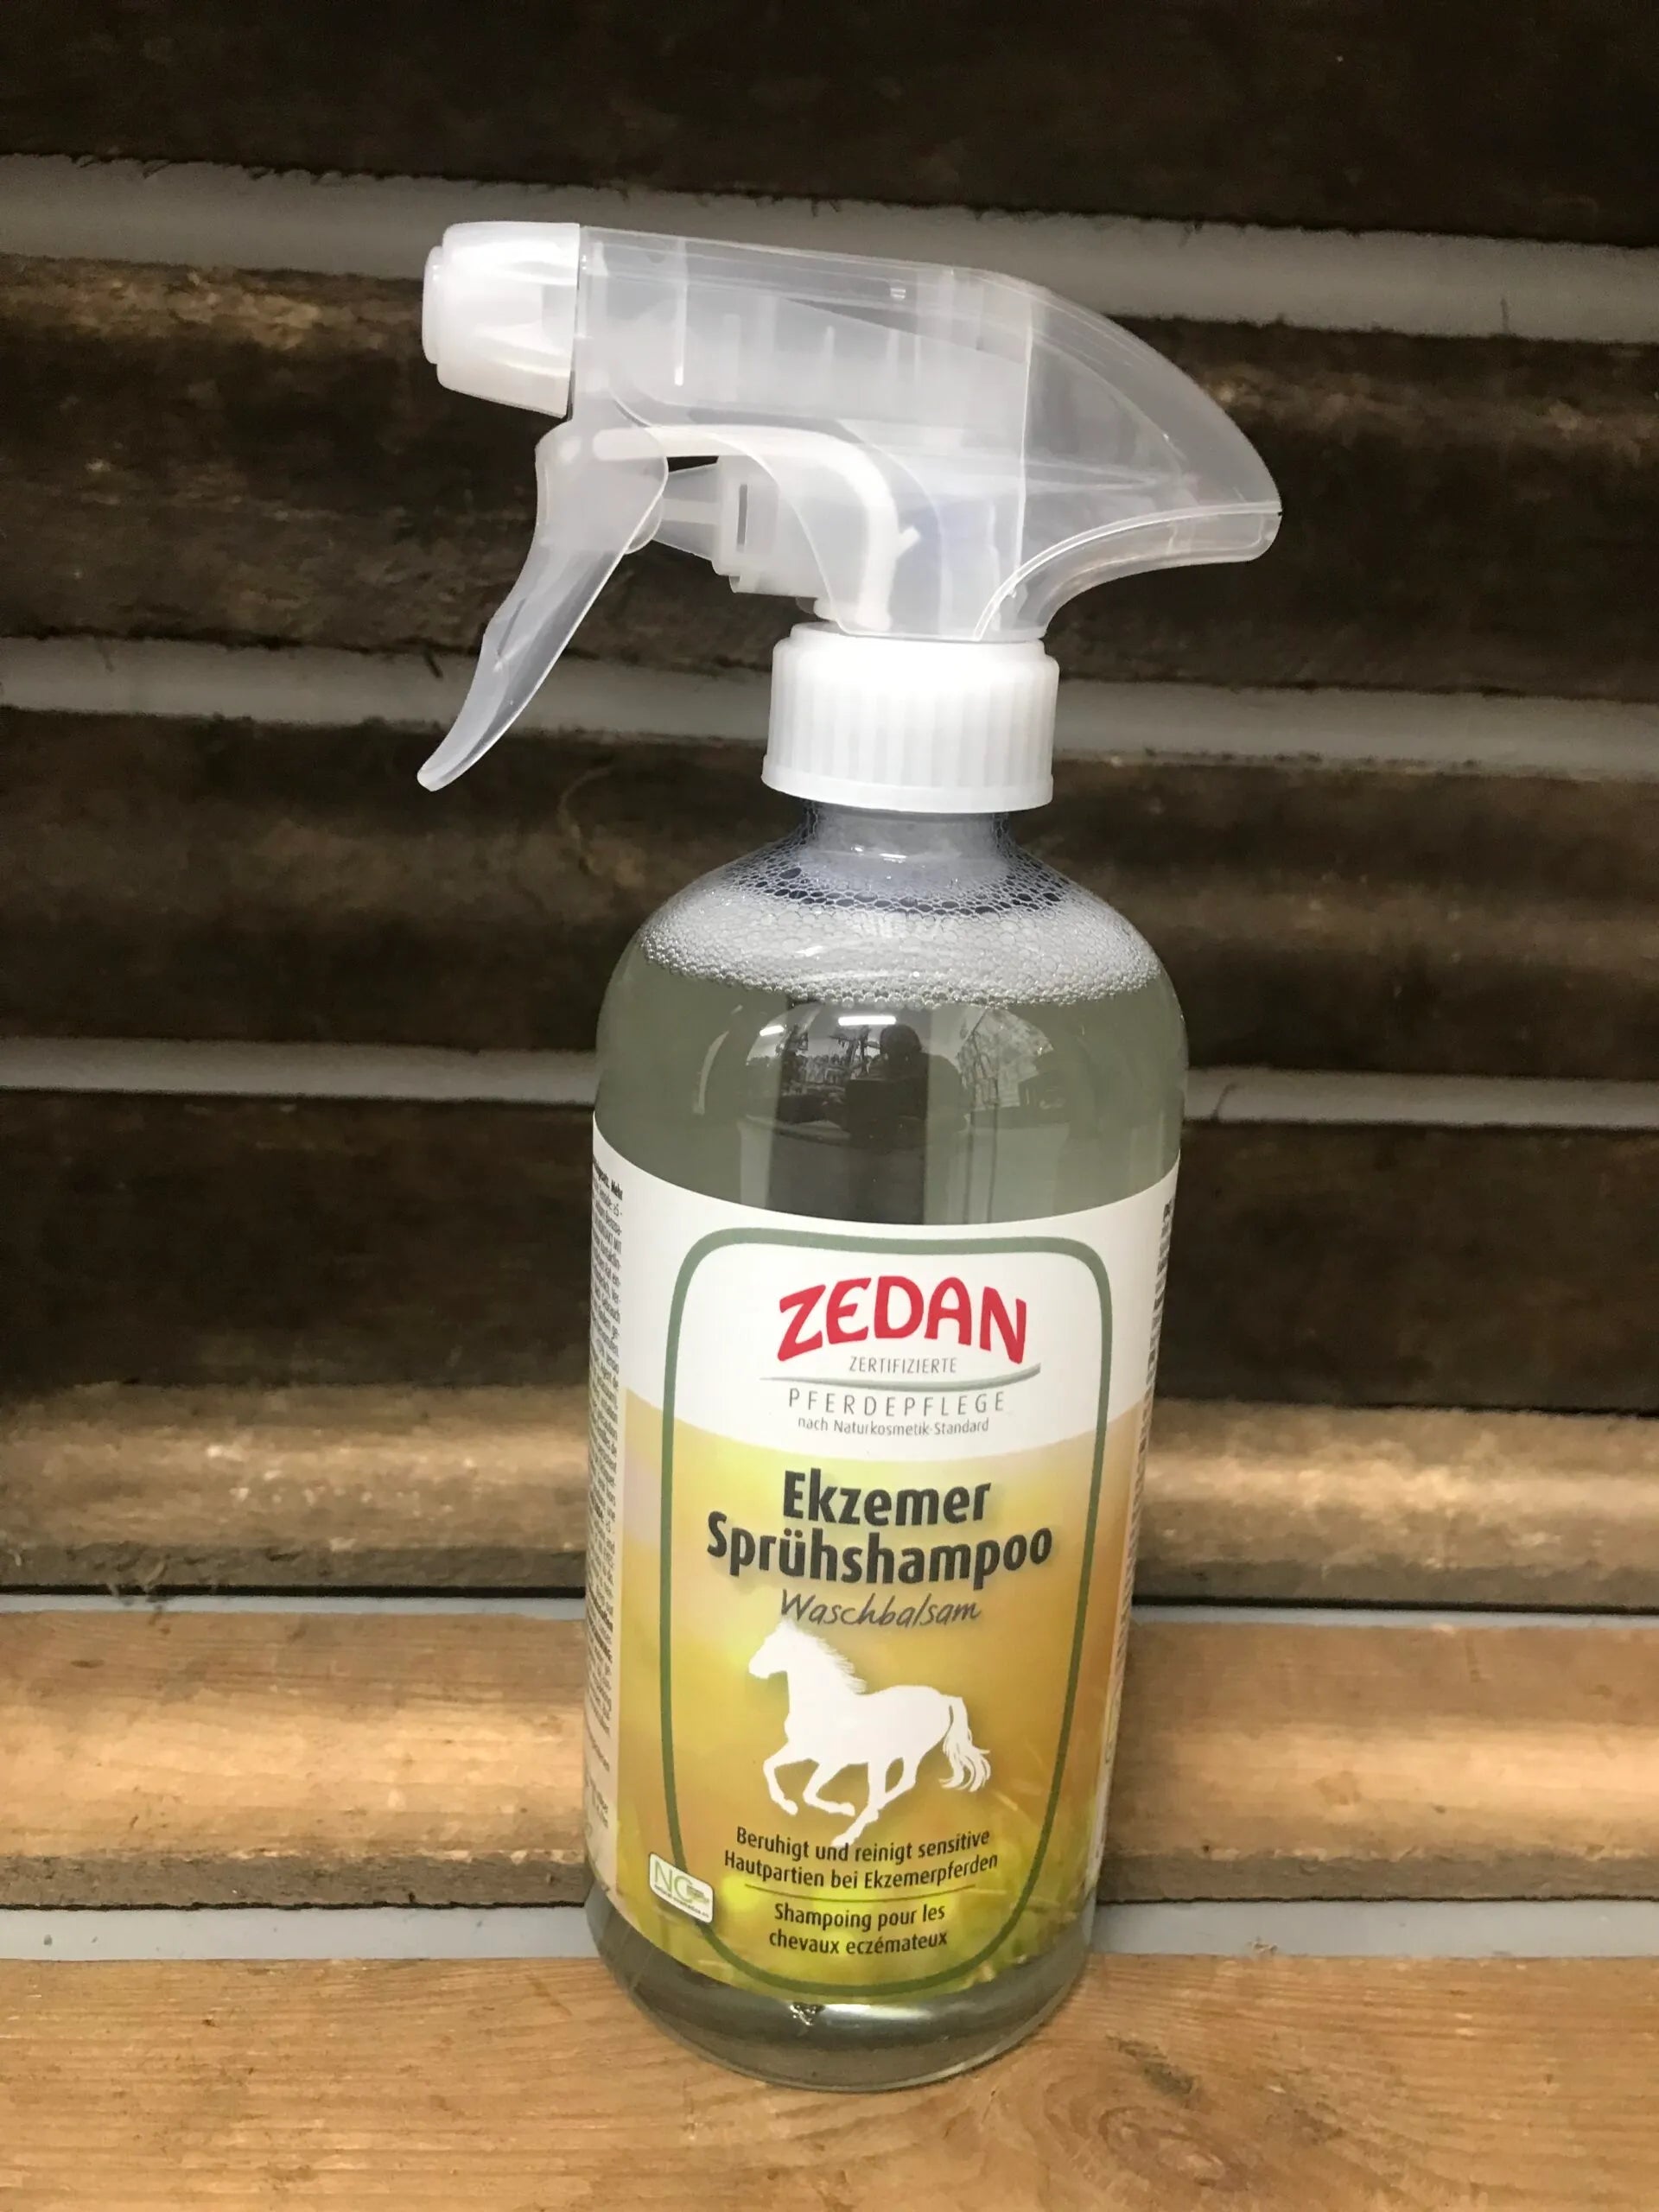 ZEDAN Spray Shampoo, Kjeldalgaard